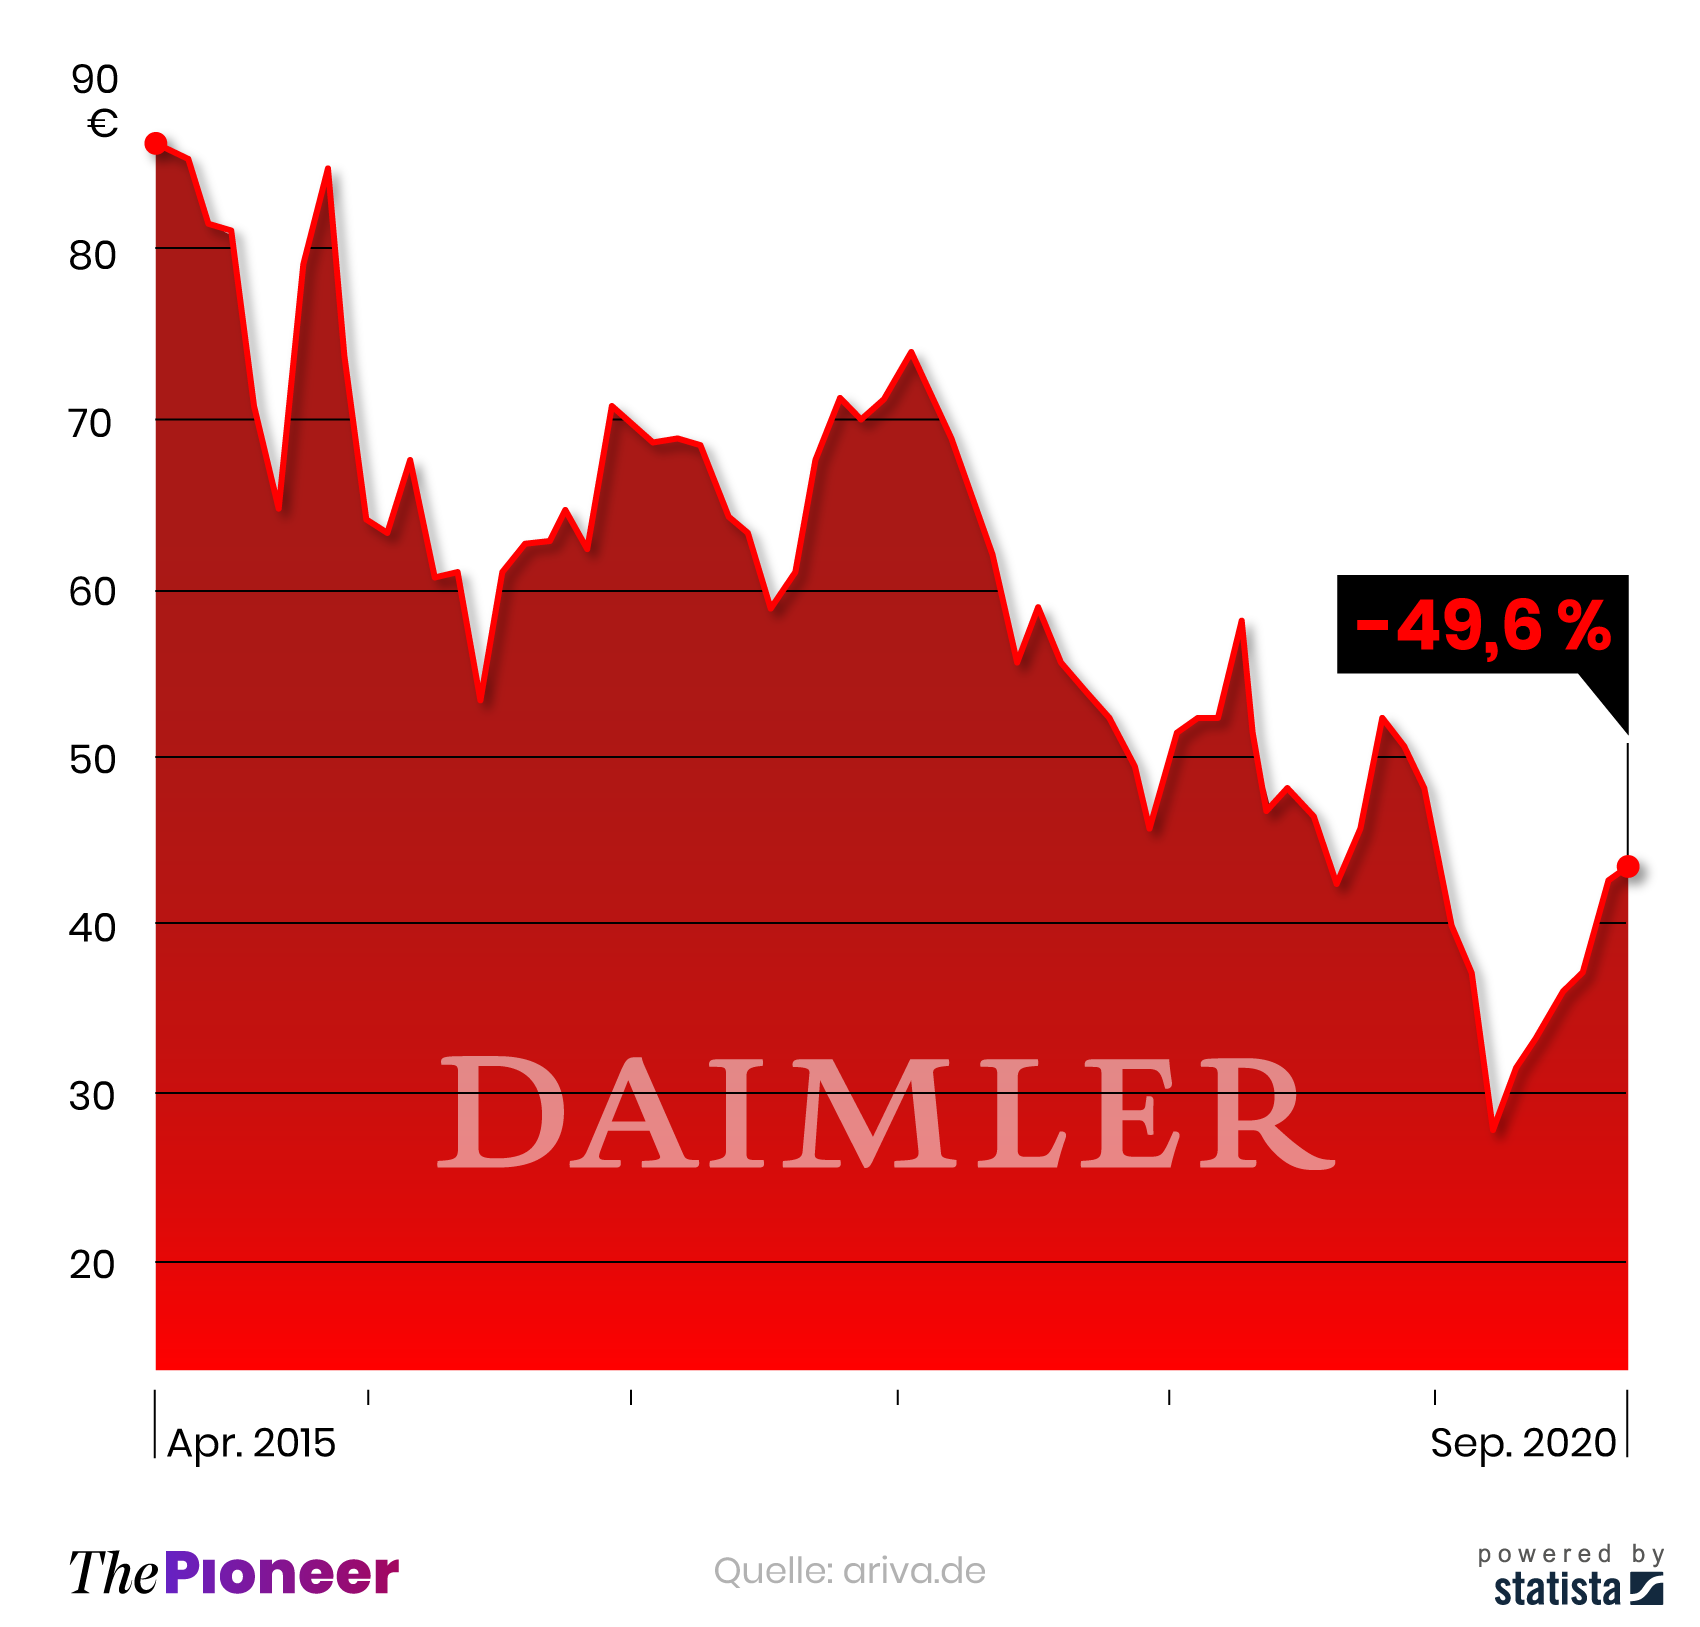 Verlauf der Daimler-Aktie seit April 2015, in Euro (Verlust in Prozent)